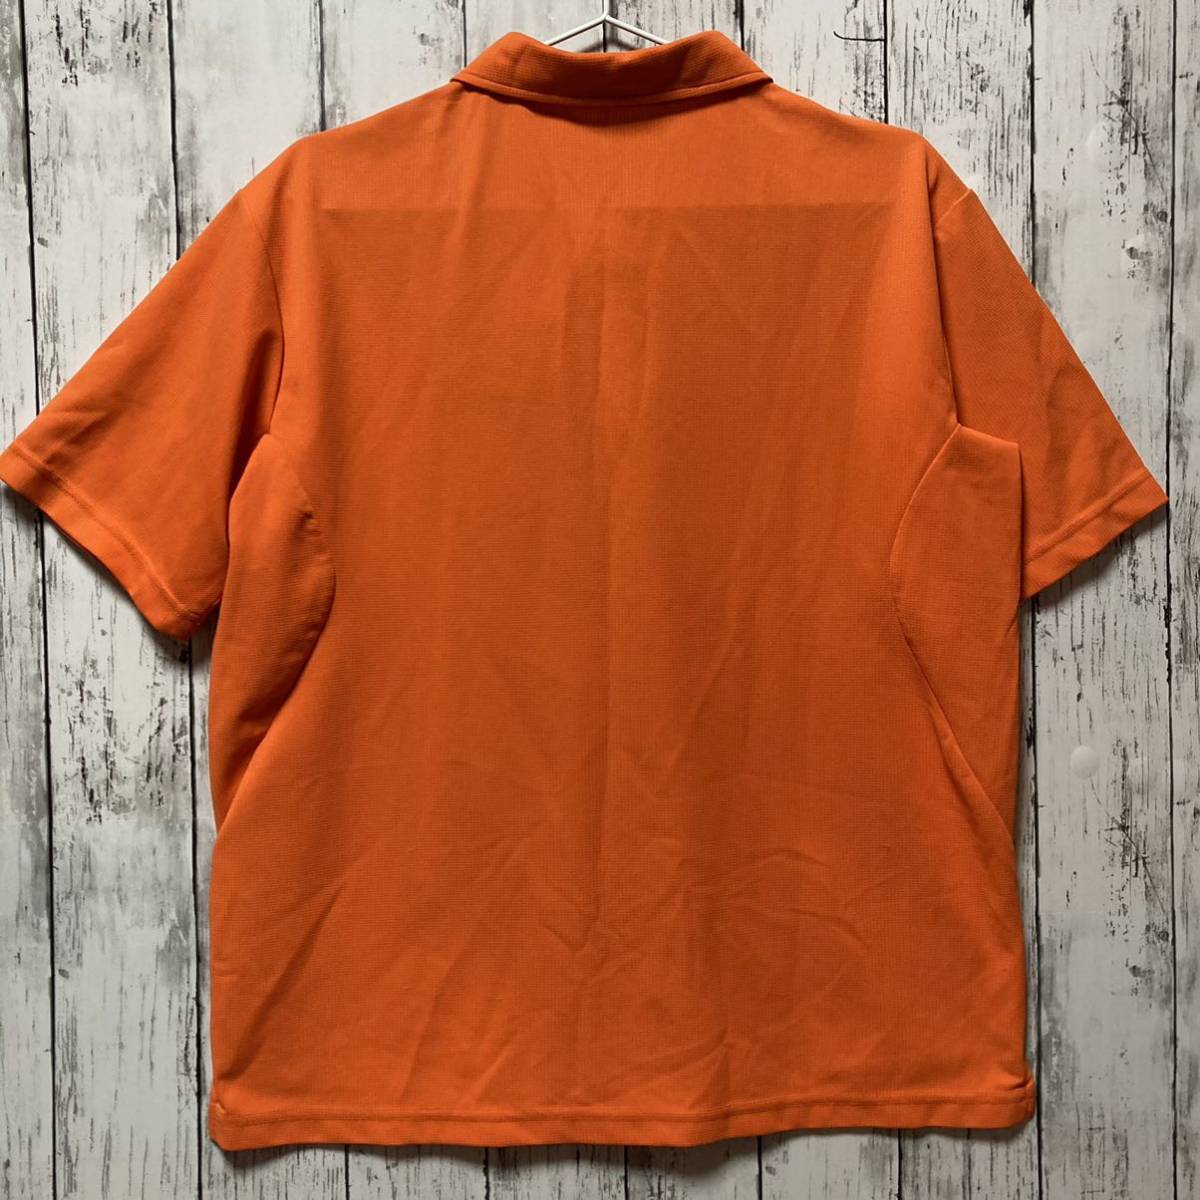 【le coq GOLF】ルコックゴルフ メンズ 半袖ポロシャツ Lサイズ オレンジ 身幅ゆったり_画像5